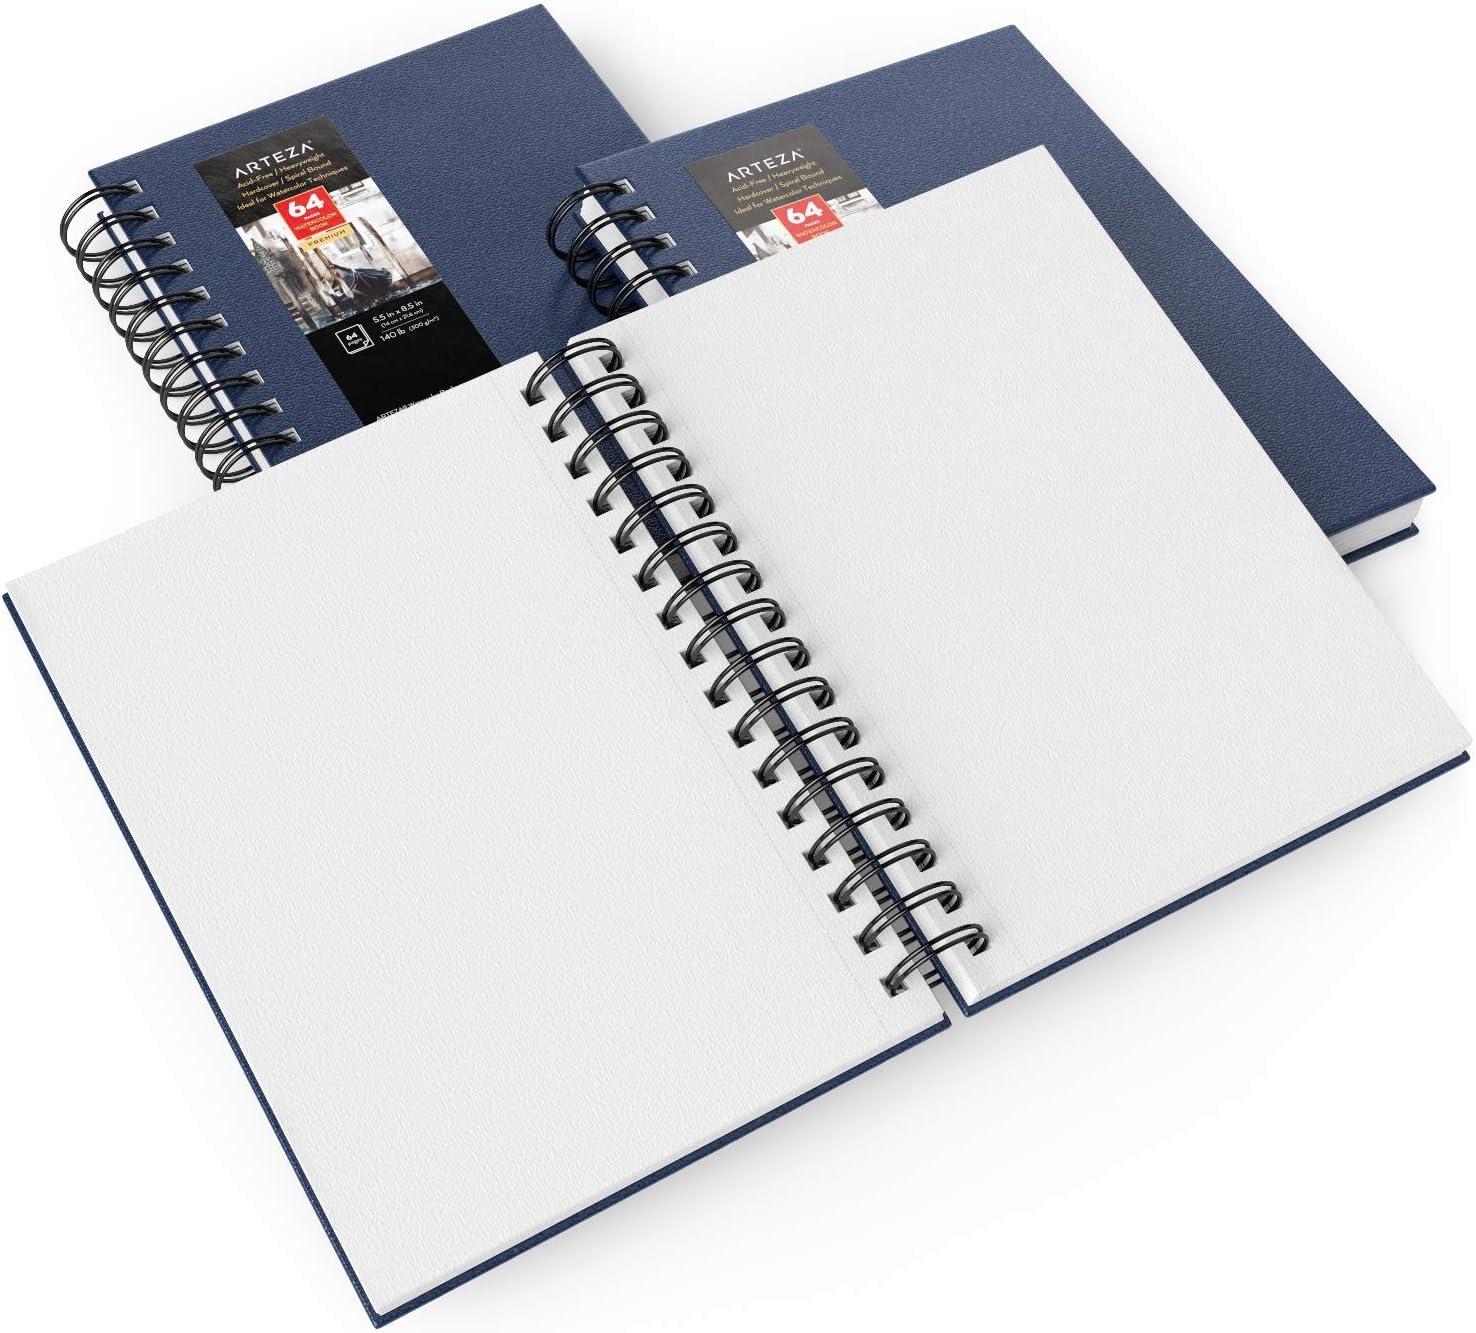 Arteza Premium Sketchbook 5.5X8.5 3pk